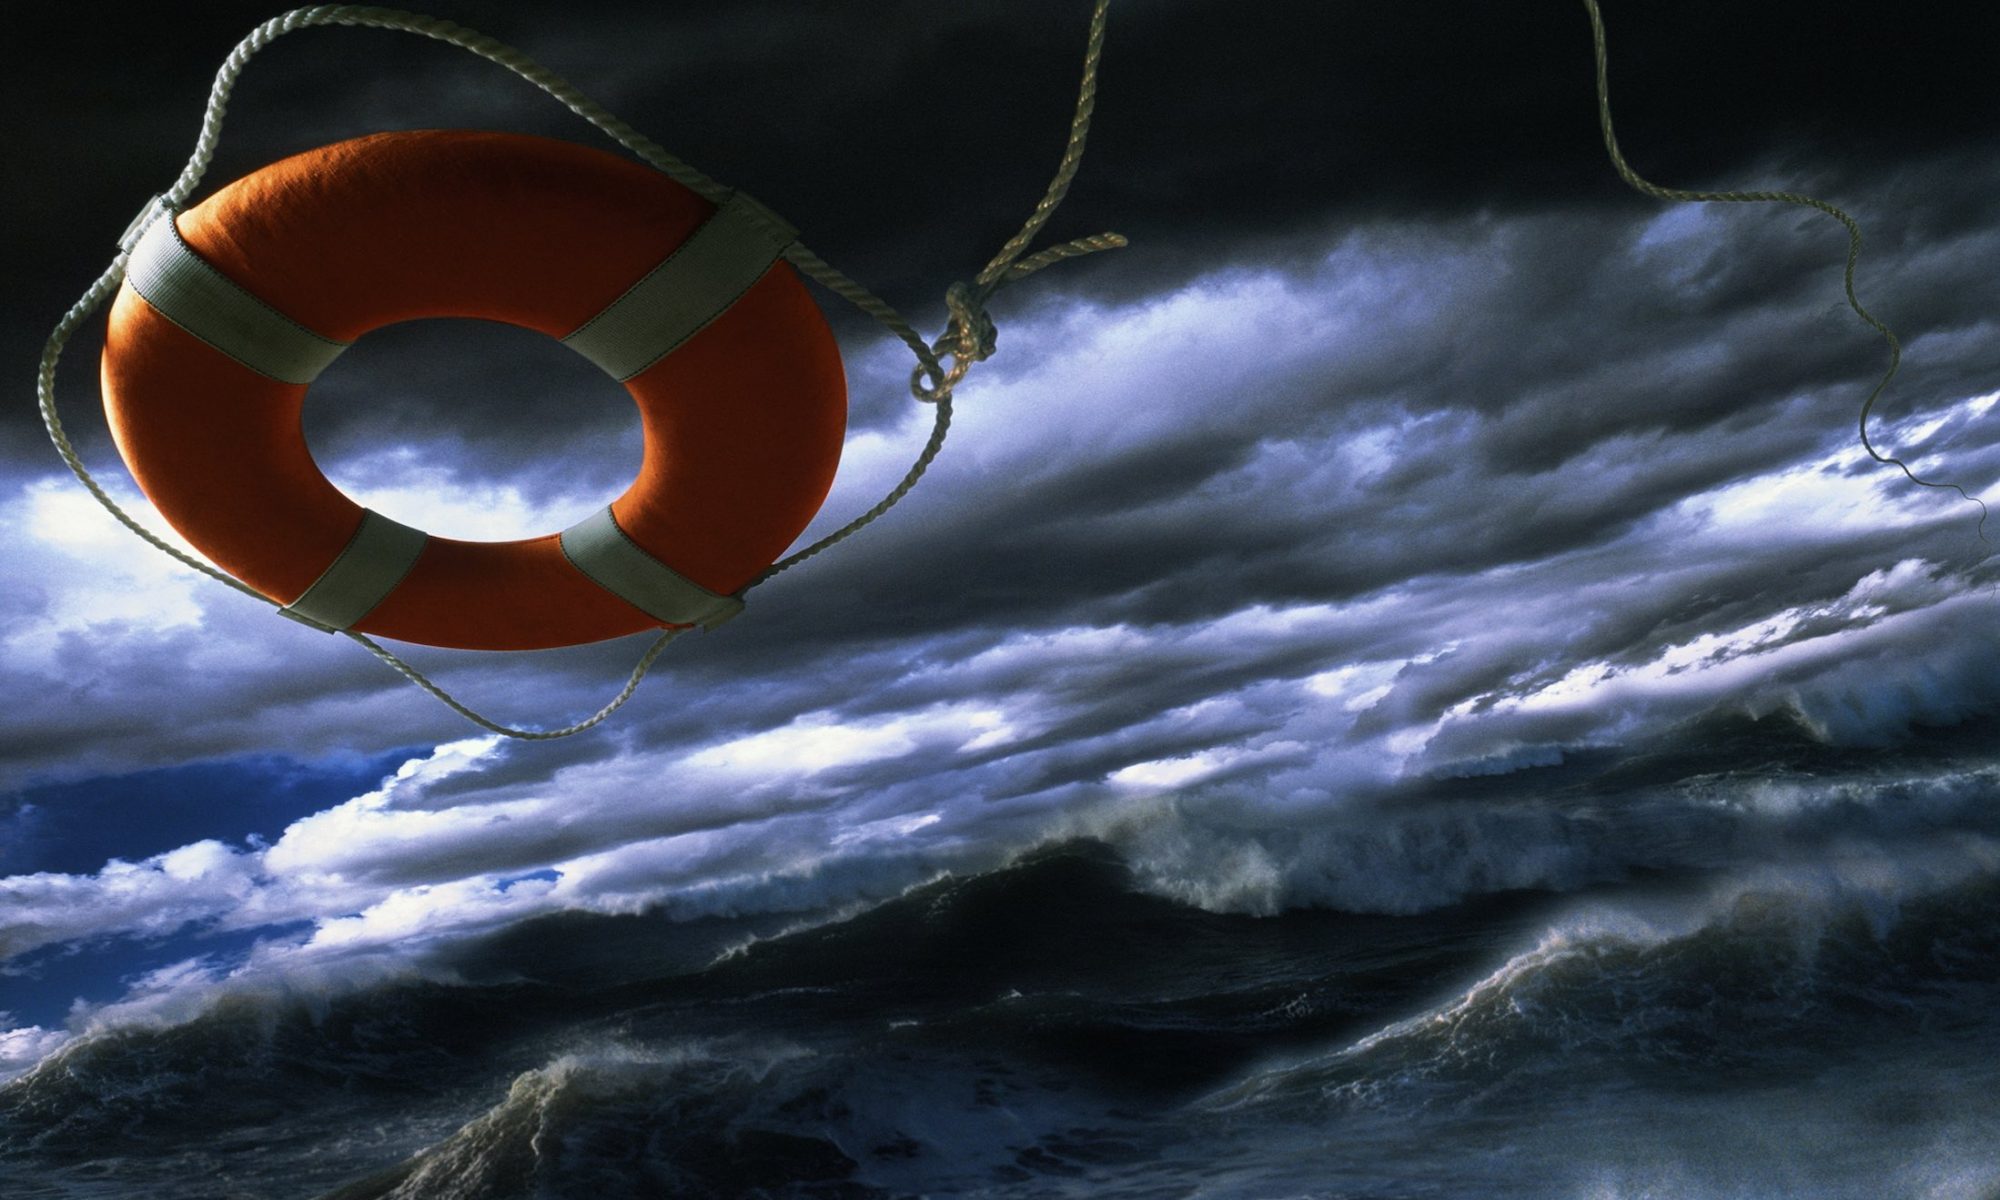 Спасательный круг в море. Спасательный круг на воде. Спасательный круг в урагане. Спасательный круг на волнах. Человек в спасательном круге.